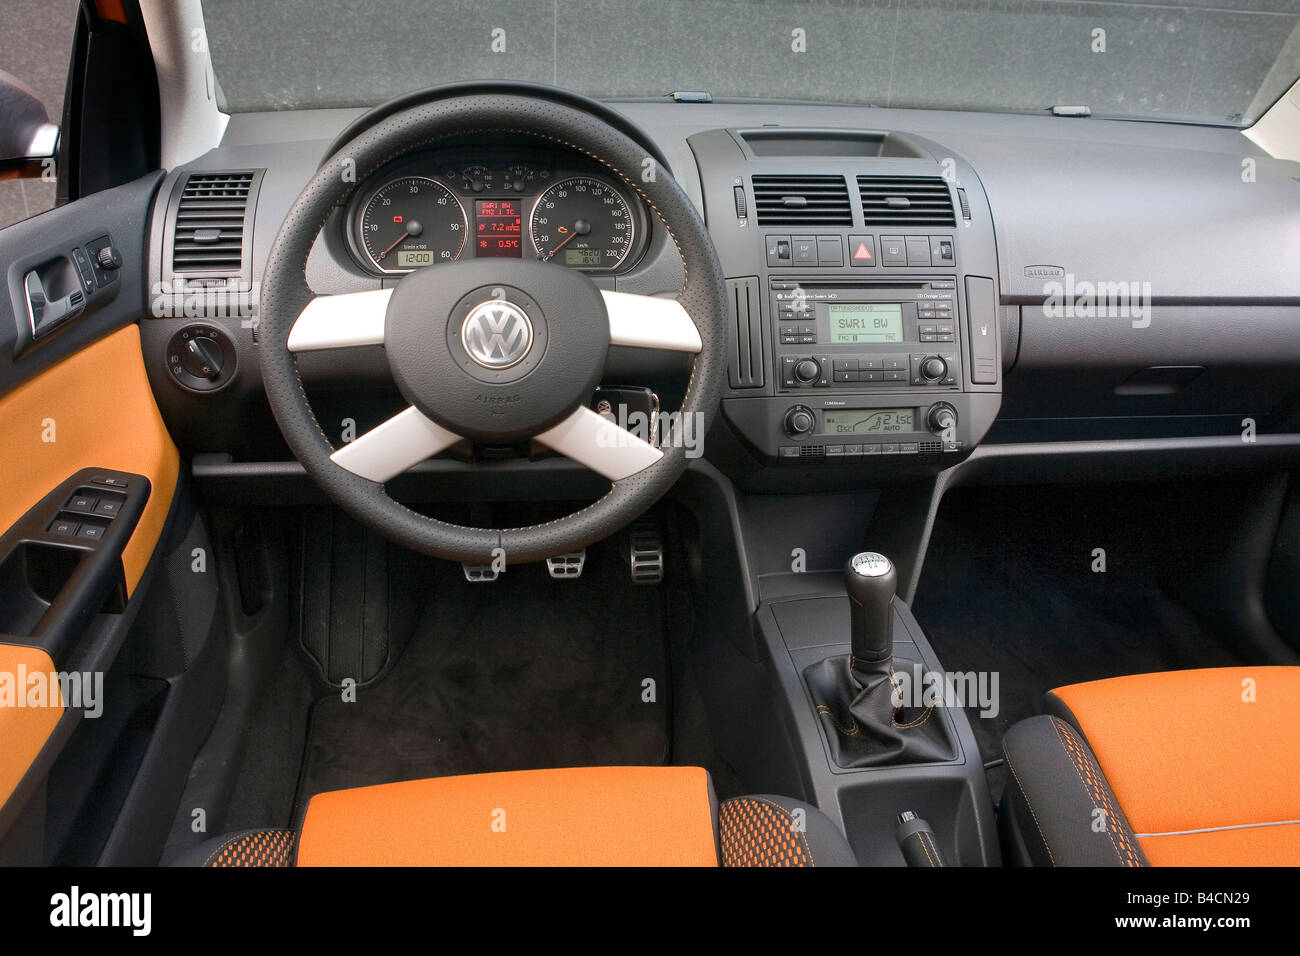 Volkswagen VW Polo Cross 1.4 TDI, modèle 2006-, orange , vue de l'intérieur, vue de l'intérieur, l'habitacle, la technique/accessoire, accesso Banque D'Images